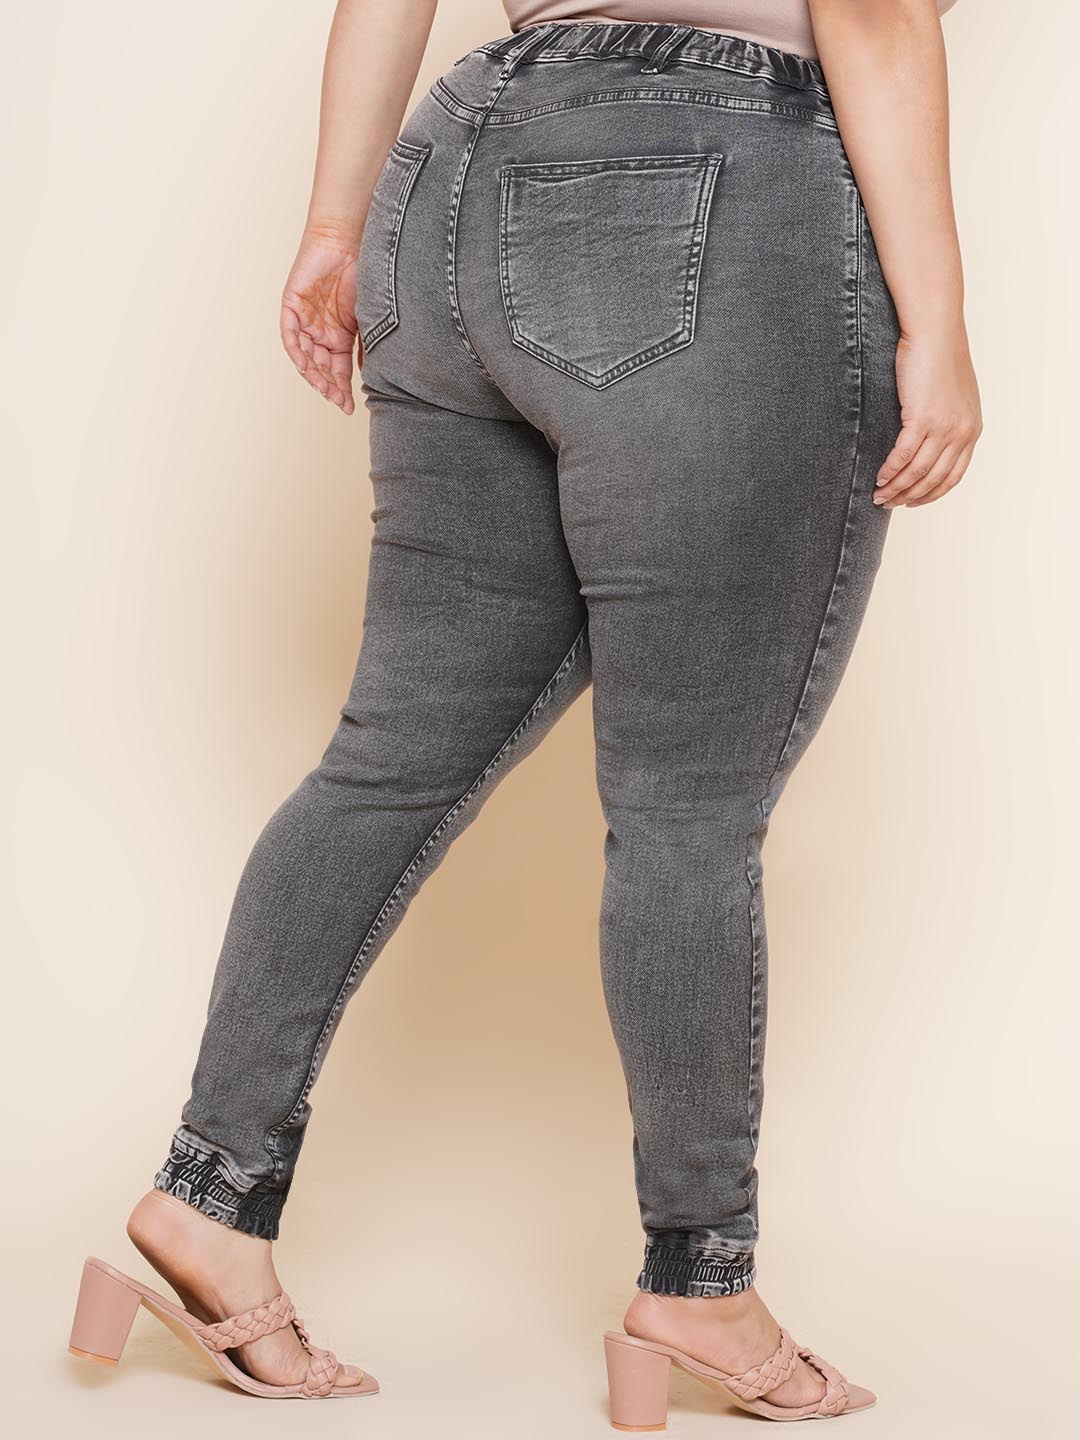 bottomwear_kiaahvi/jeans/KIJ6011/kij6011-5.jpg